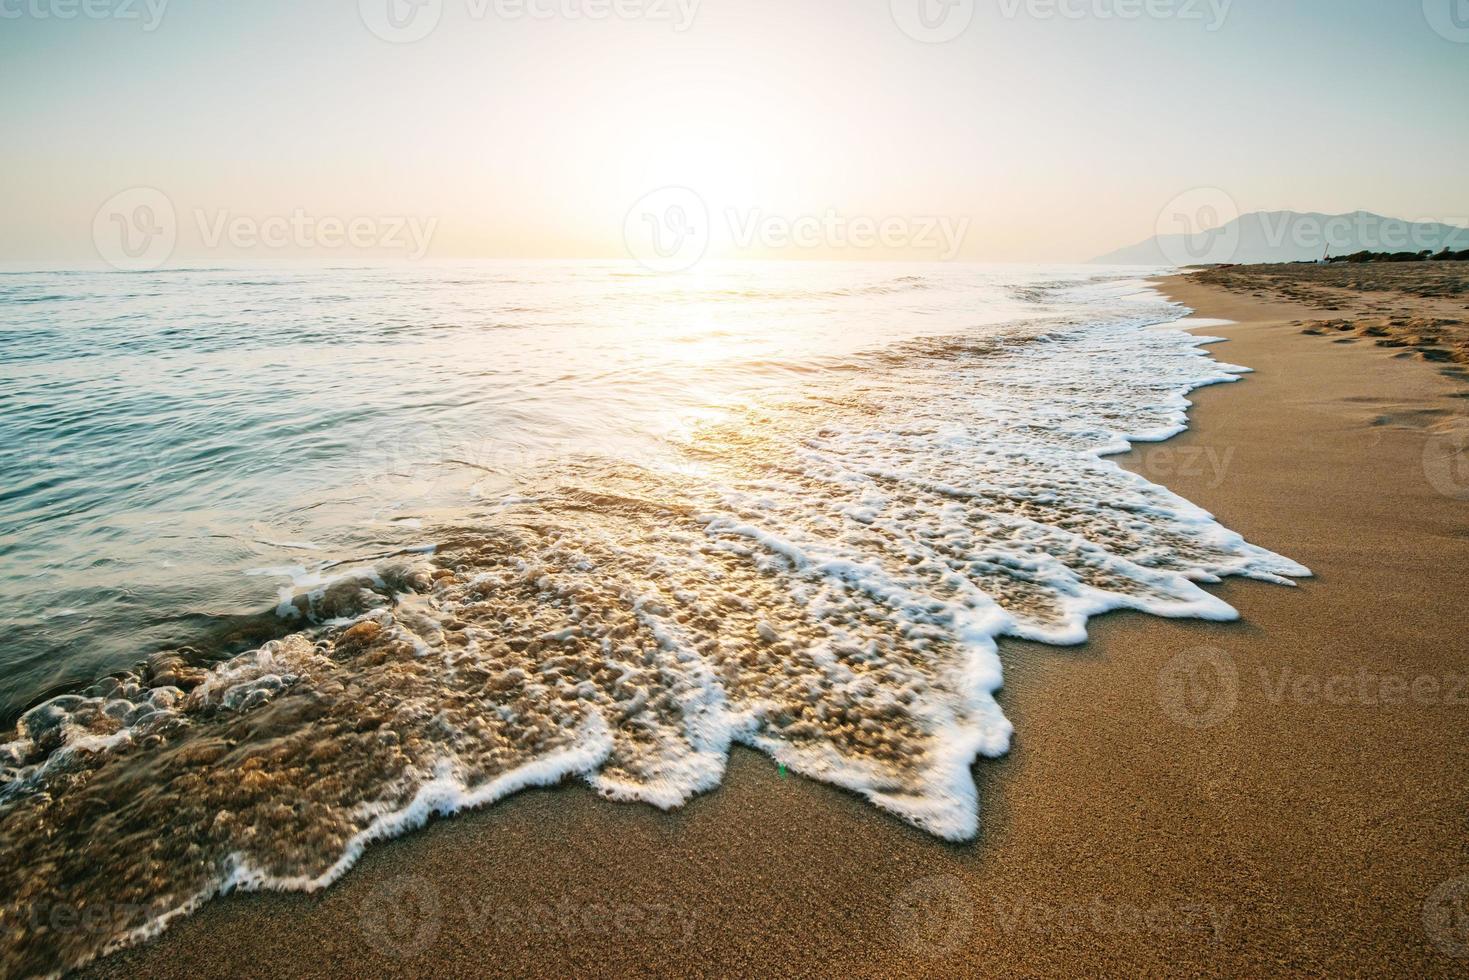 fantástica puesta de sol en la playa. Precioso paisaje foto